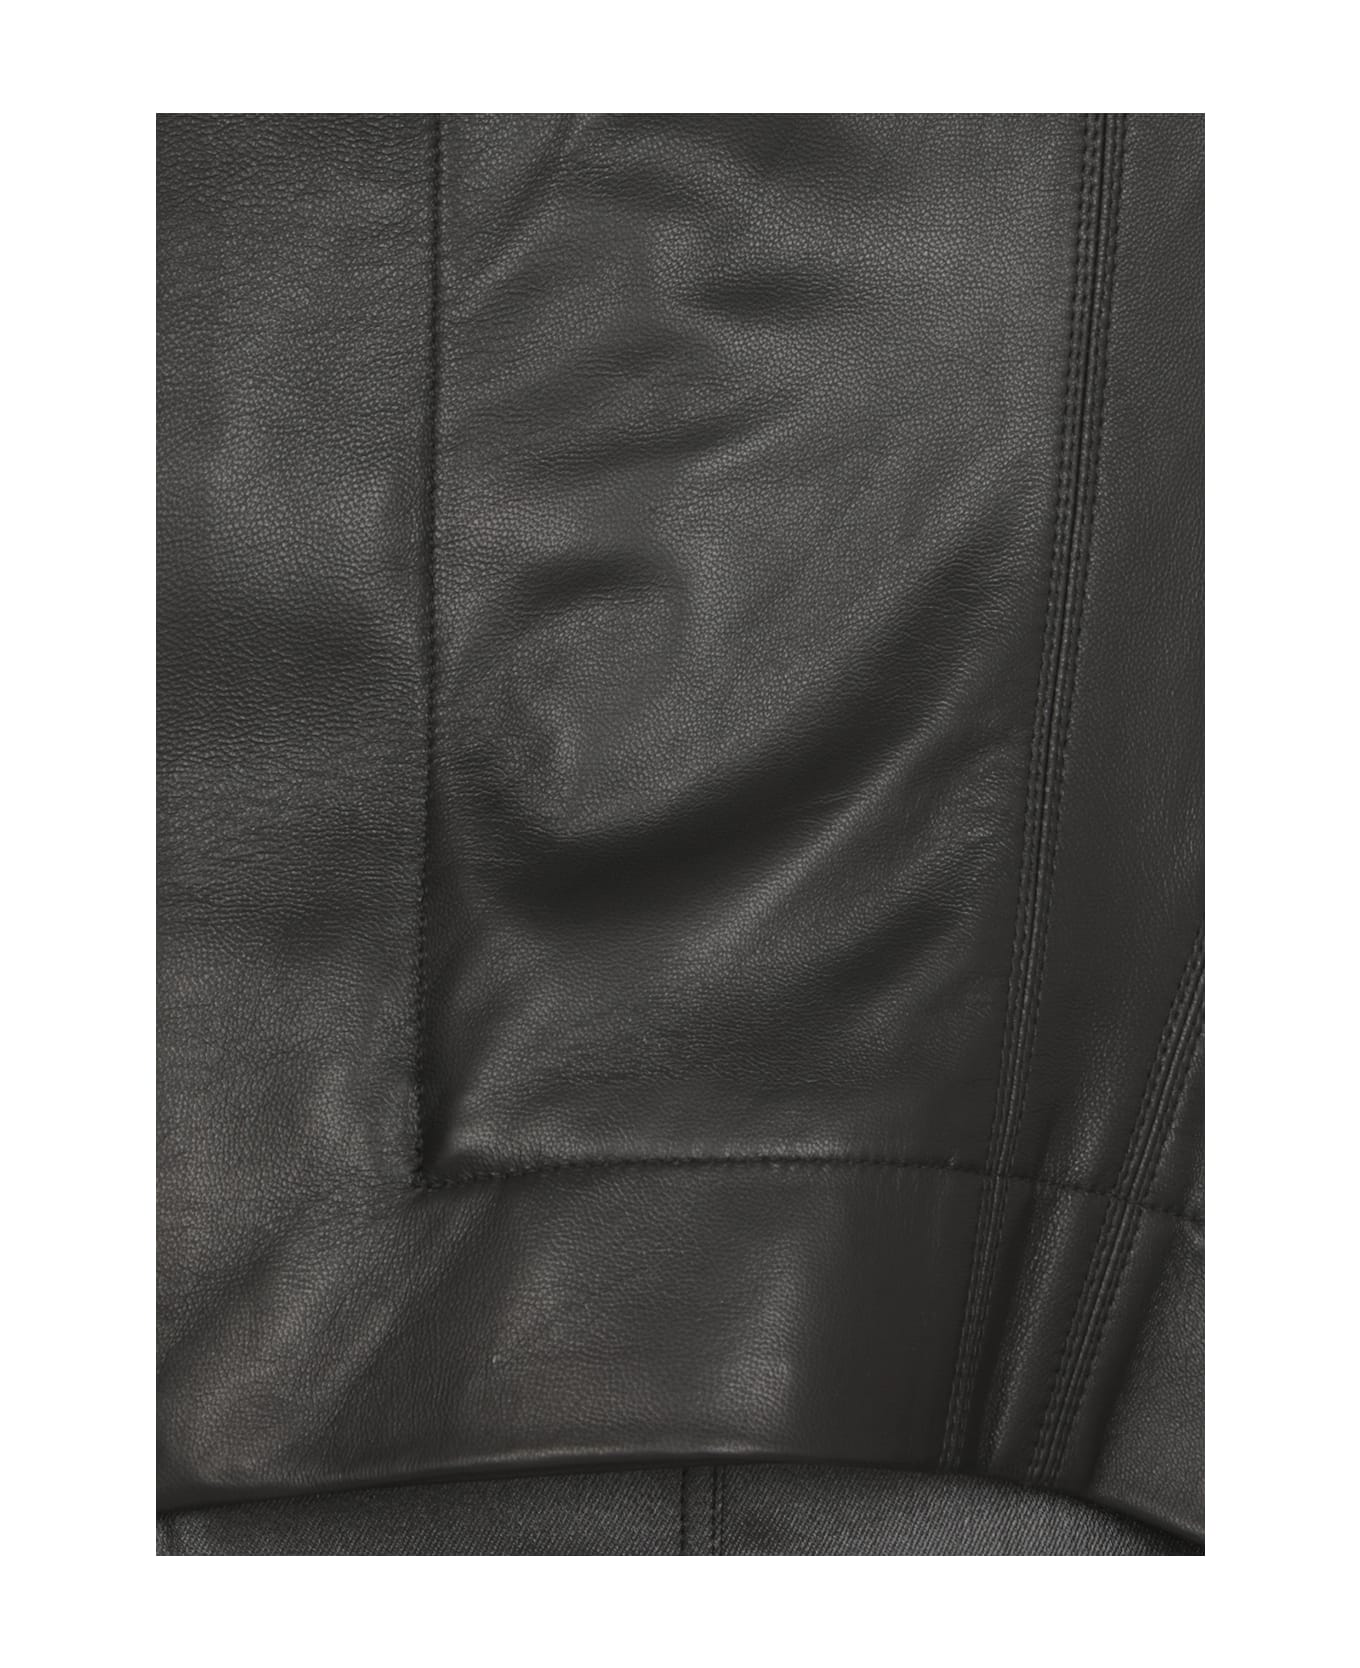 Rick Owens Naska Biker Leather Jacket In Black Leather - Black ジャケット